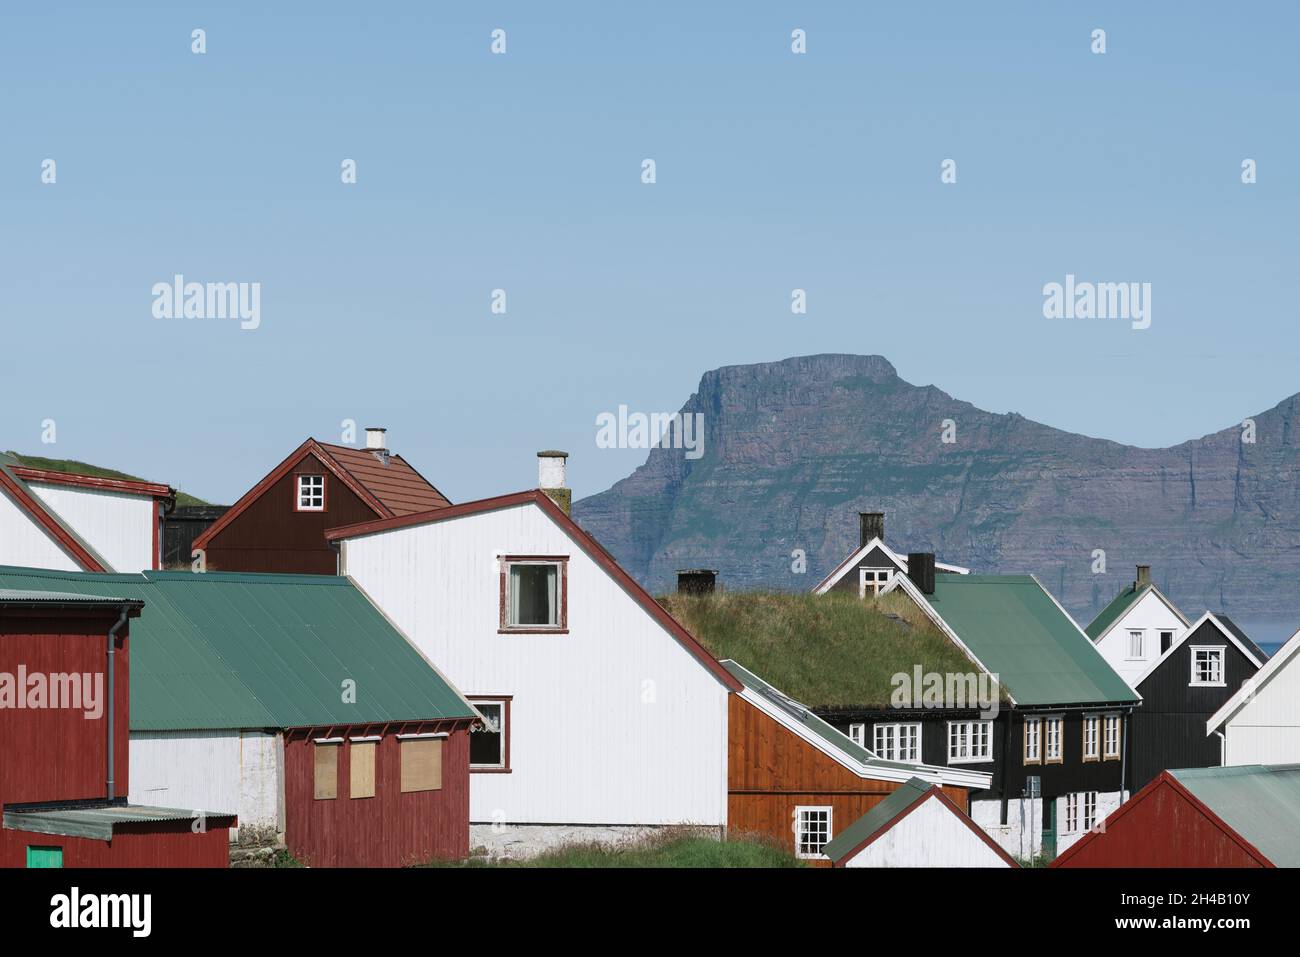 Village de Gjogv sur l'île d'Eysturoy, îles Féroé. Maisons de couleur scandinave Banque D'Images